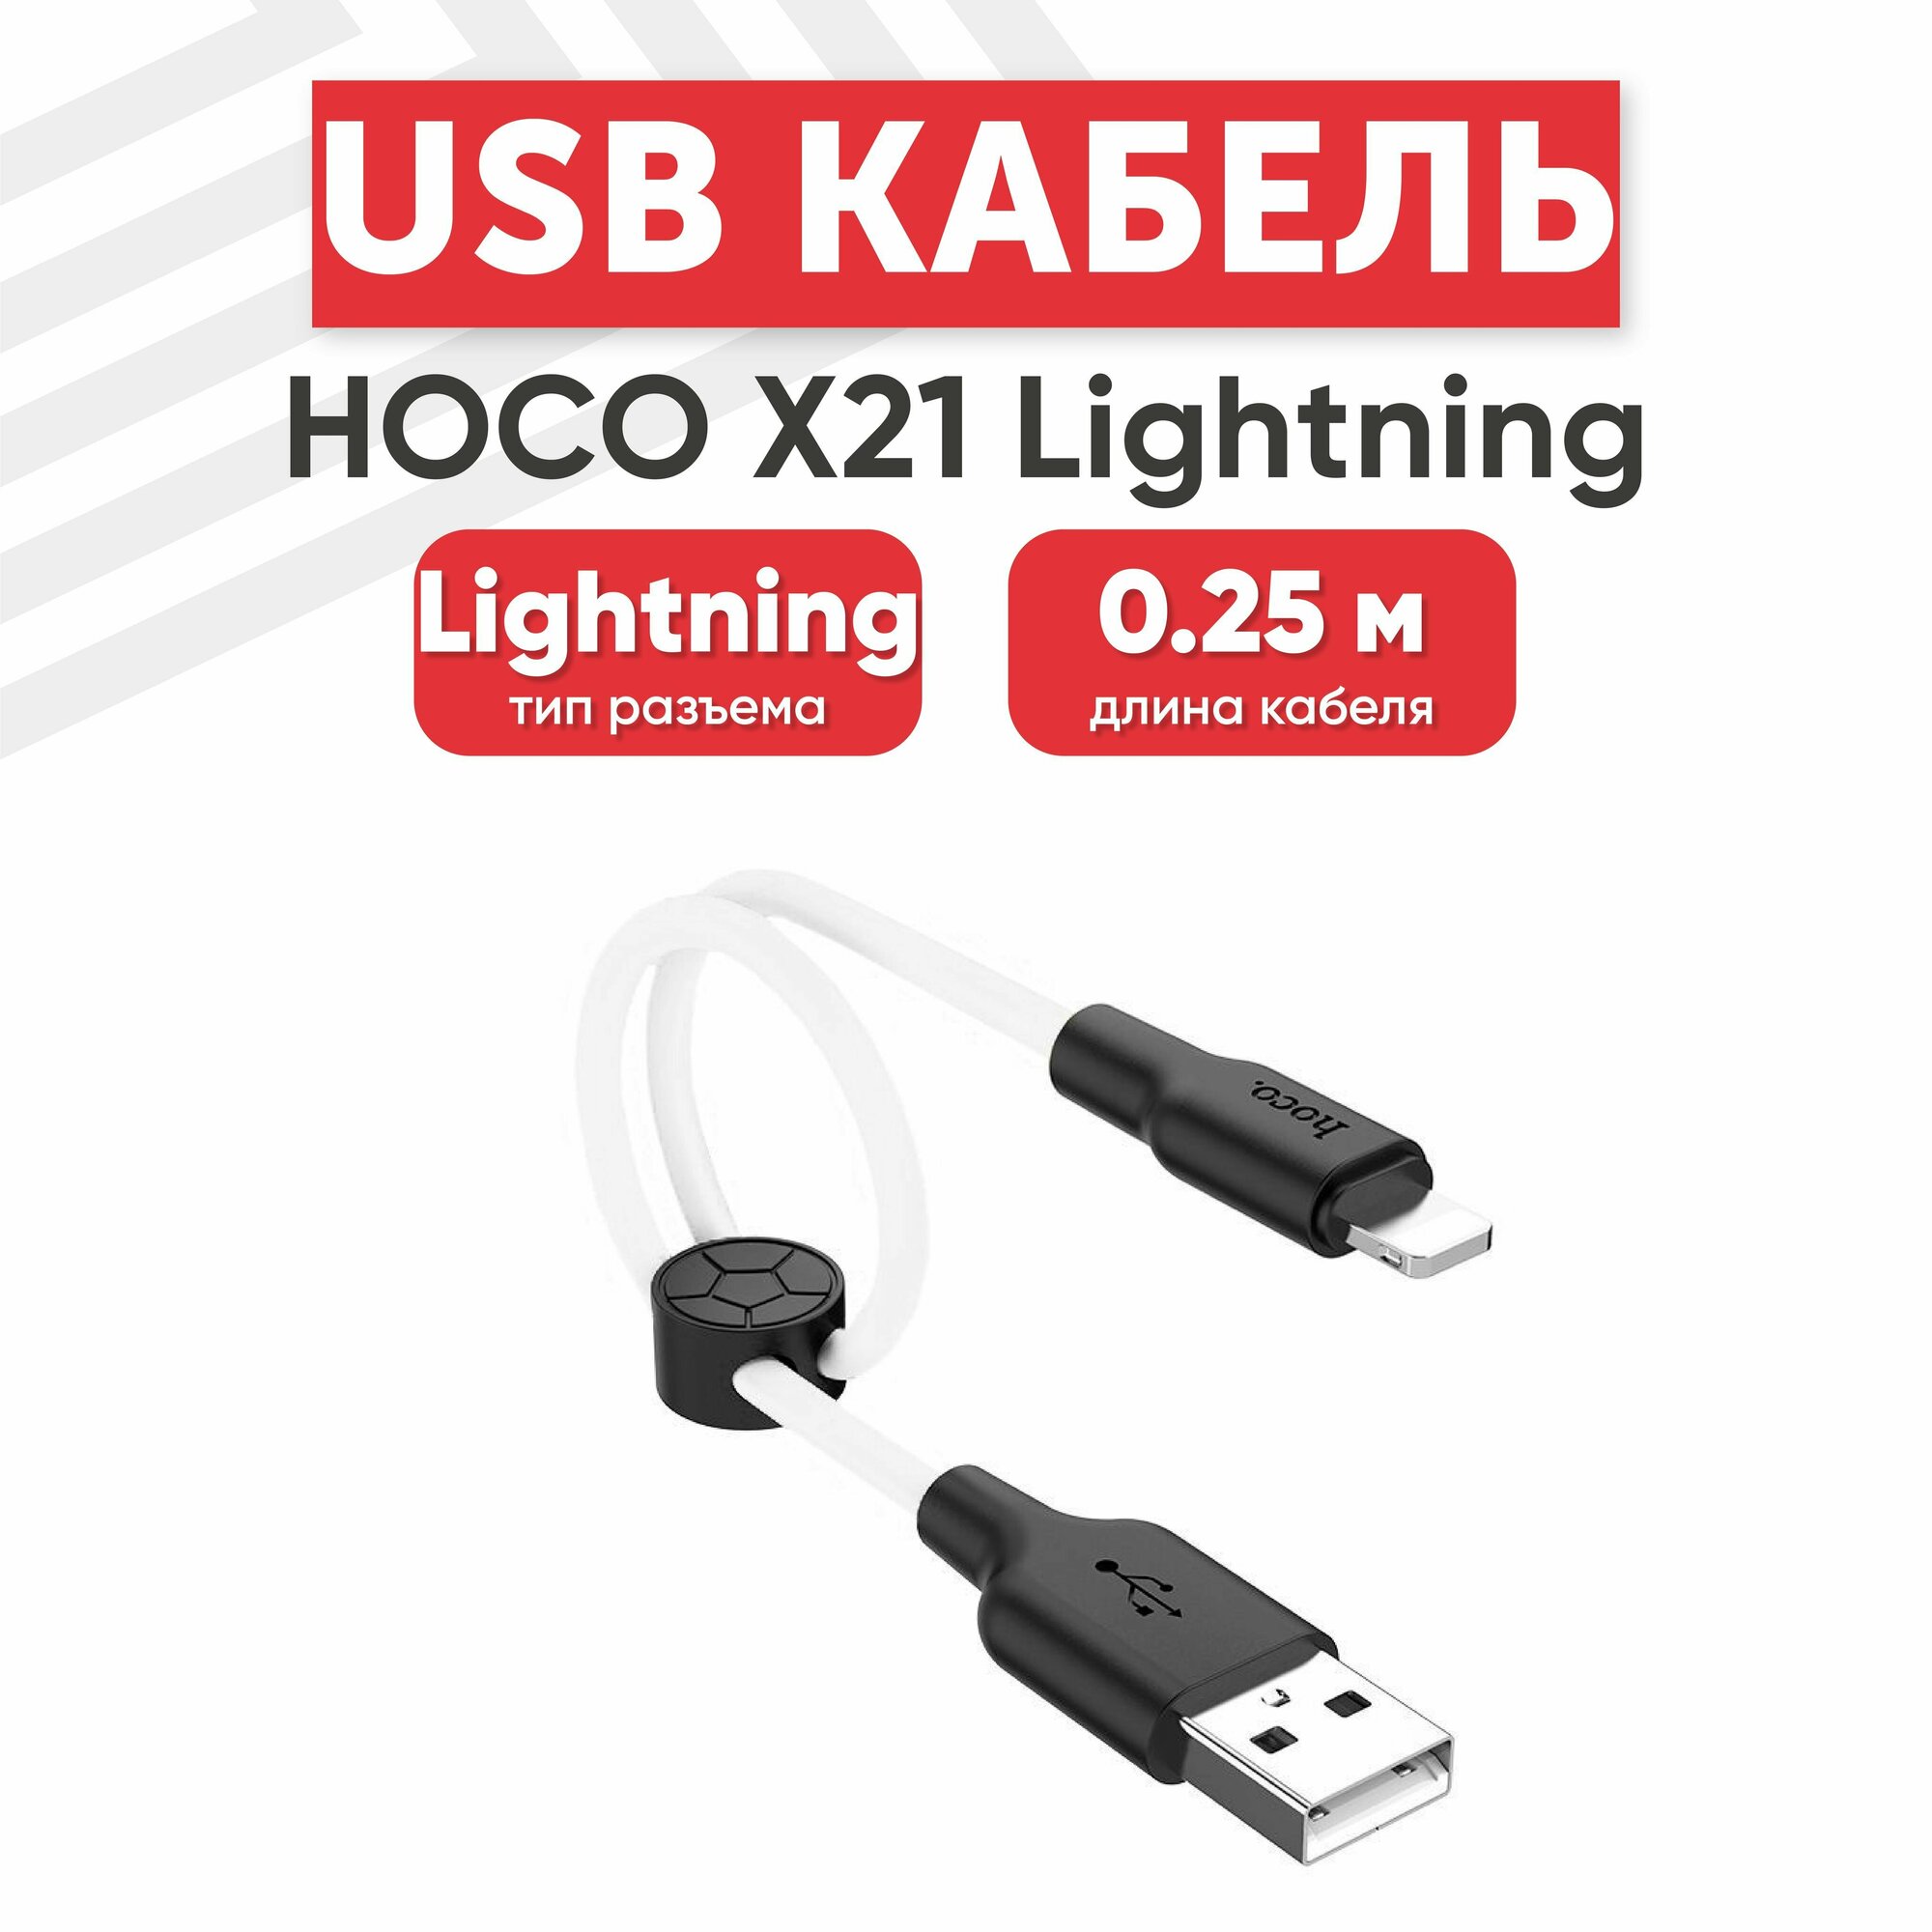 USB кабель Hoco X21 для зарядки, передачи данных Lightning 8-pin, 2.4А, 0.25 метра, силикон, белый с черным